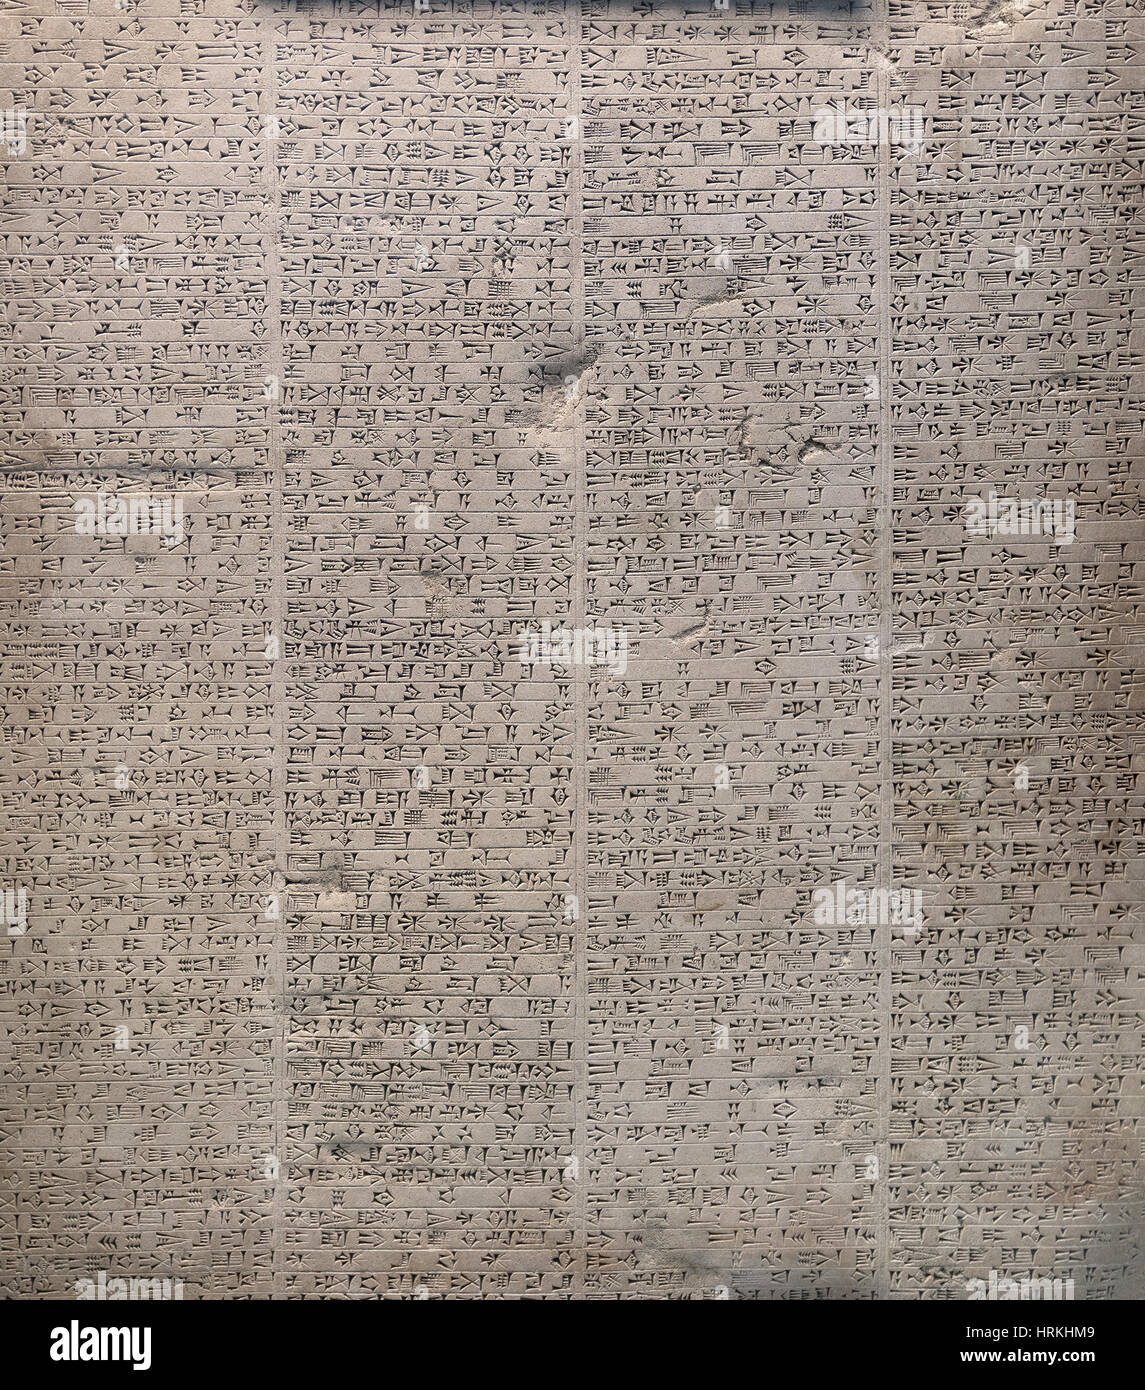 Cadre photo de la rempli une pierre gravée trouvés dans les ruines de l'ancienne Babylone, décrivant la dévotion religieuse et civique de l'ONÉ de réalisations Banque D'Images